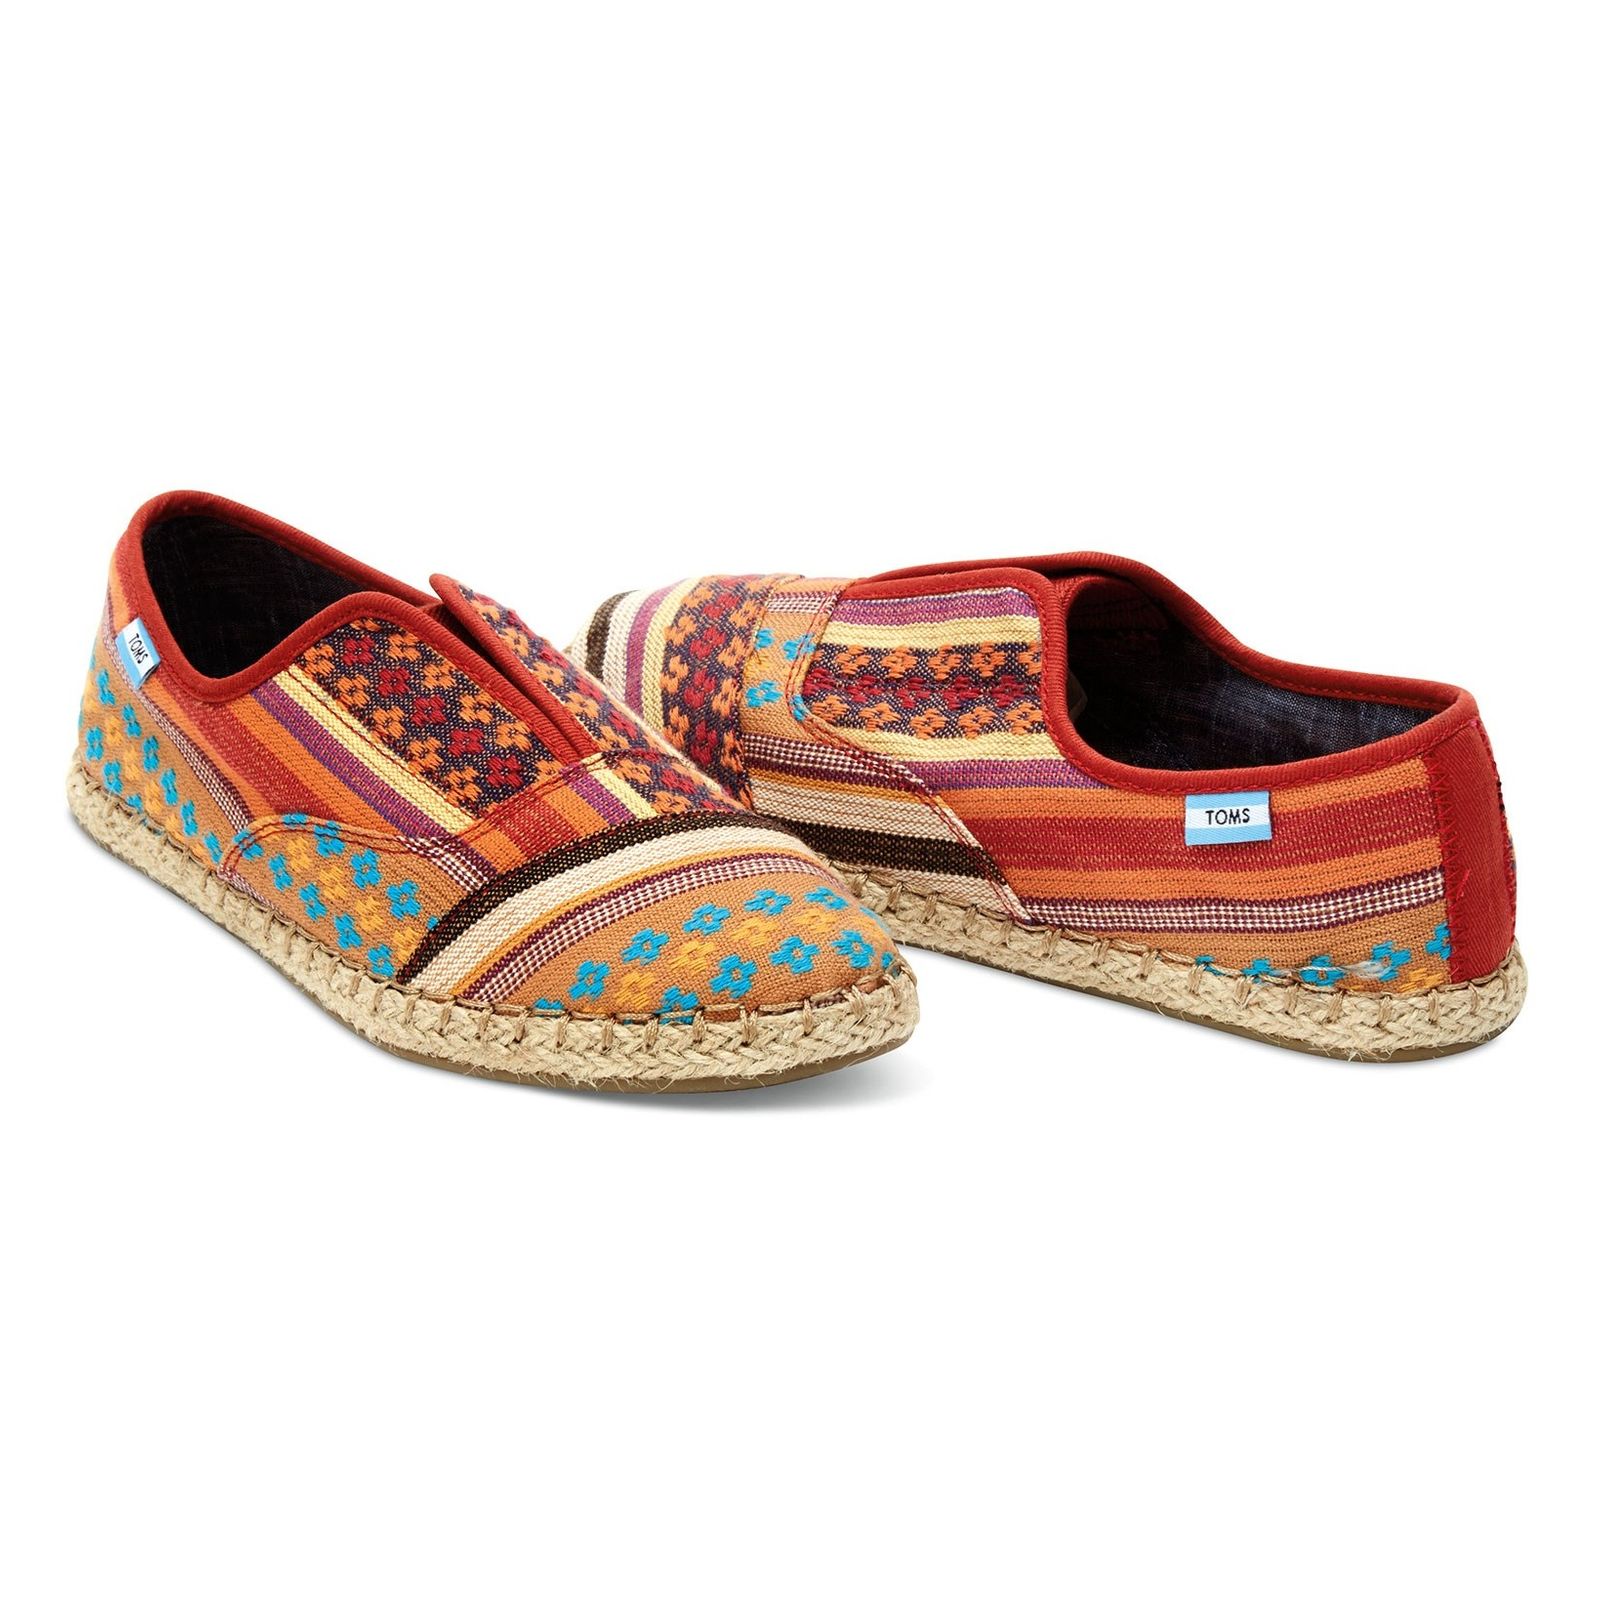 کفش تخت نخی زنانه - تامز - راه راه رنگي طرح منطقه کاين - 8